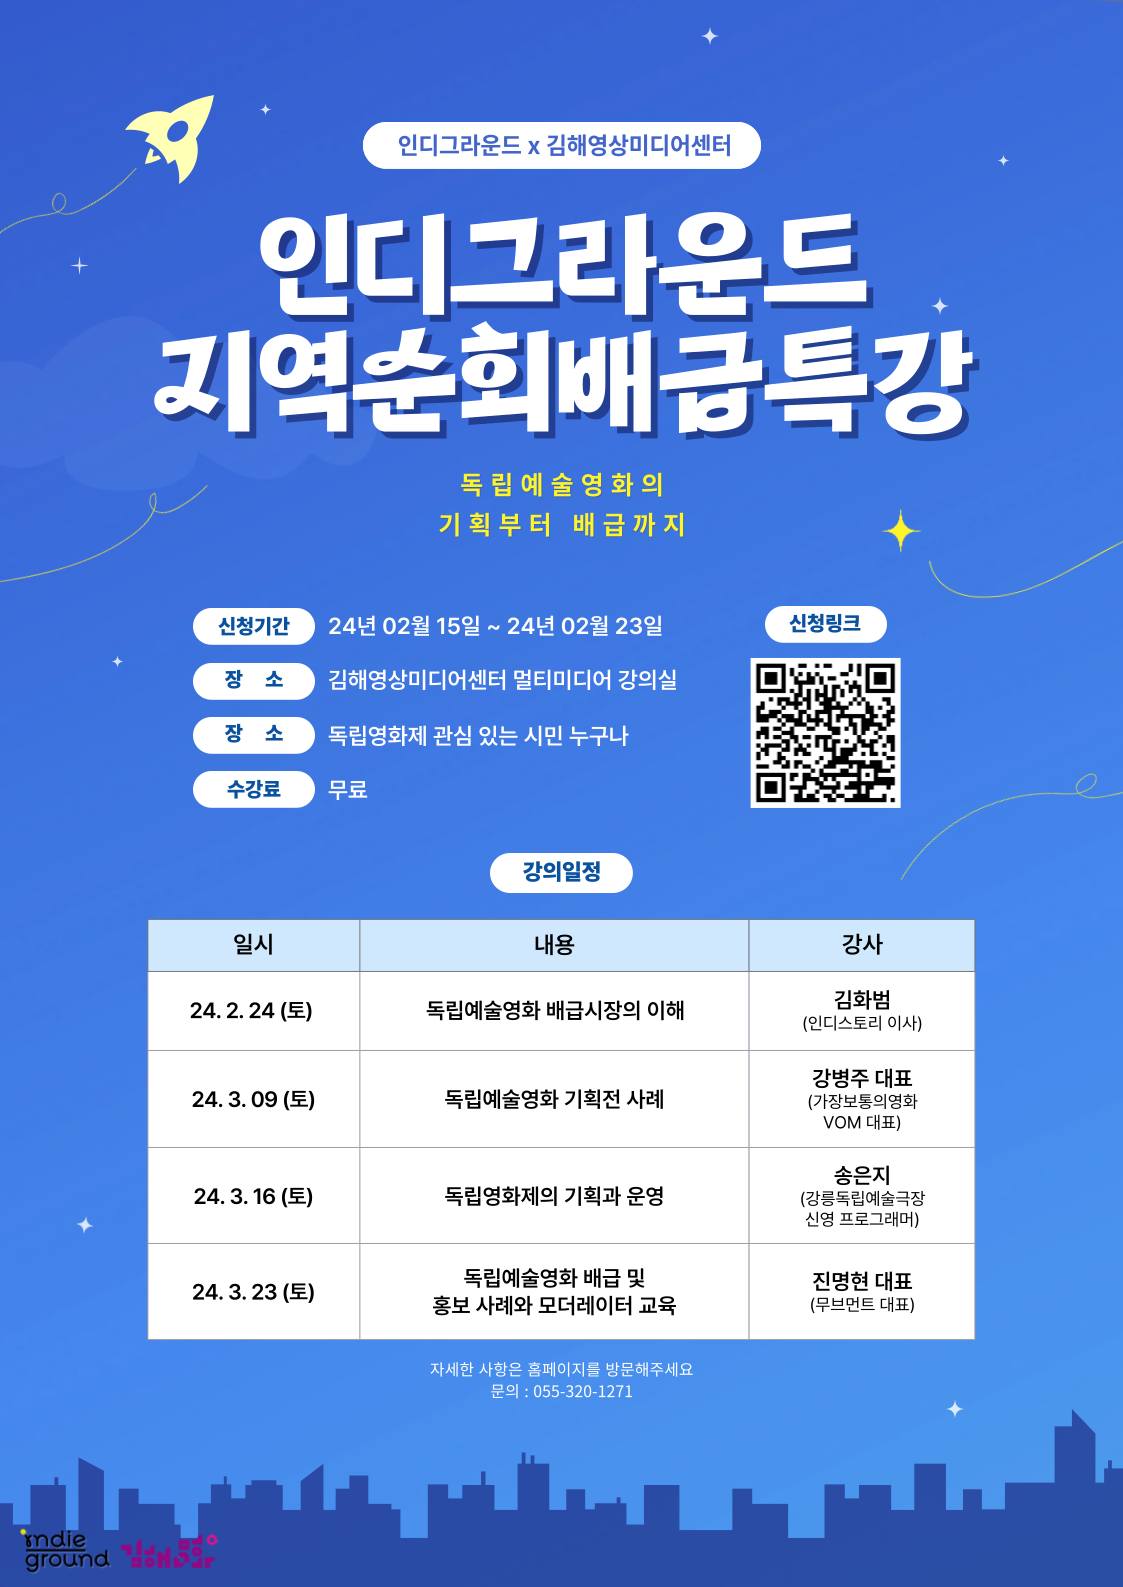 (재)김해문화재단 영상미디어센터, 독립예술영화 ‘지역순회 배급 특강’ 개최